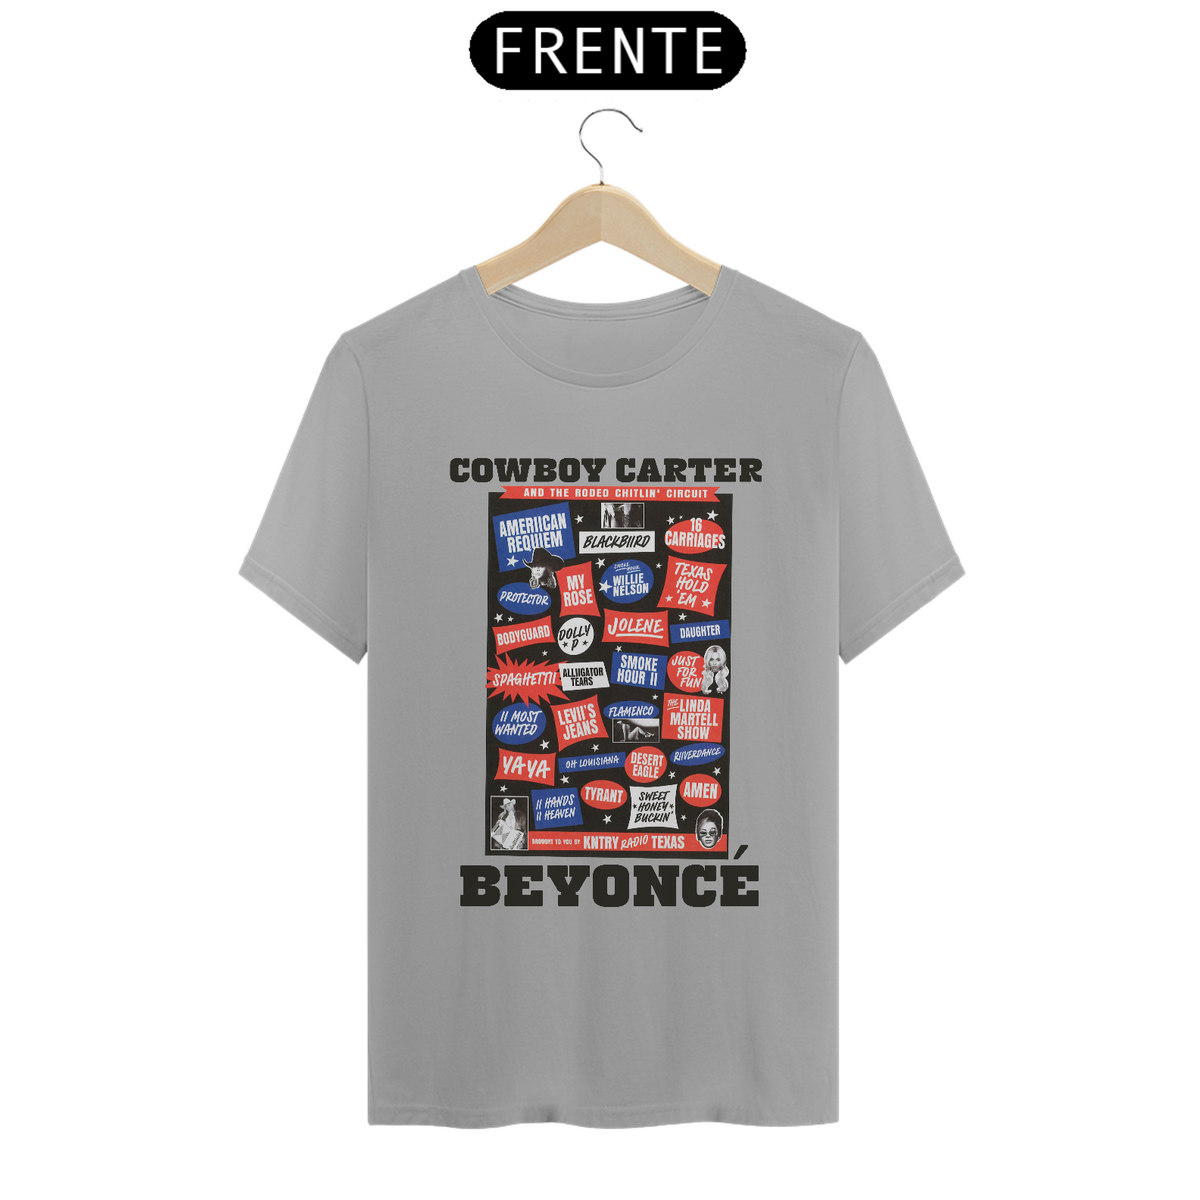 Nome do produto: Camiseta Beyoncé - Cowboy Carter Songs